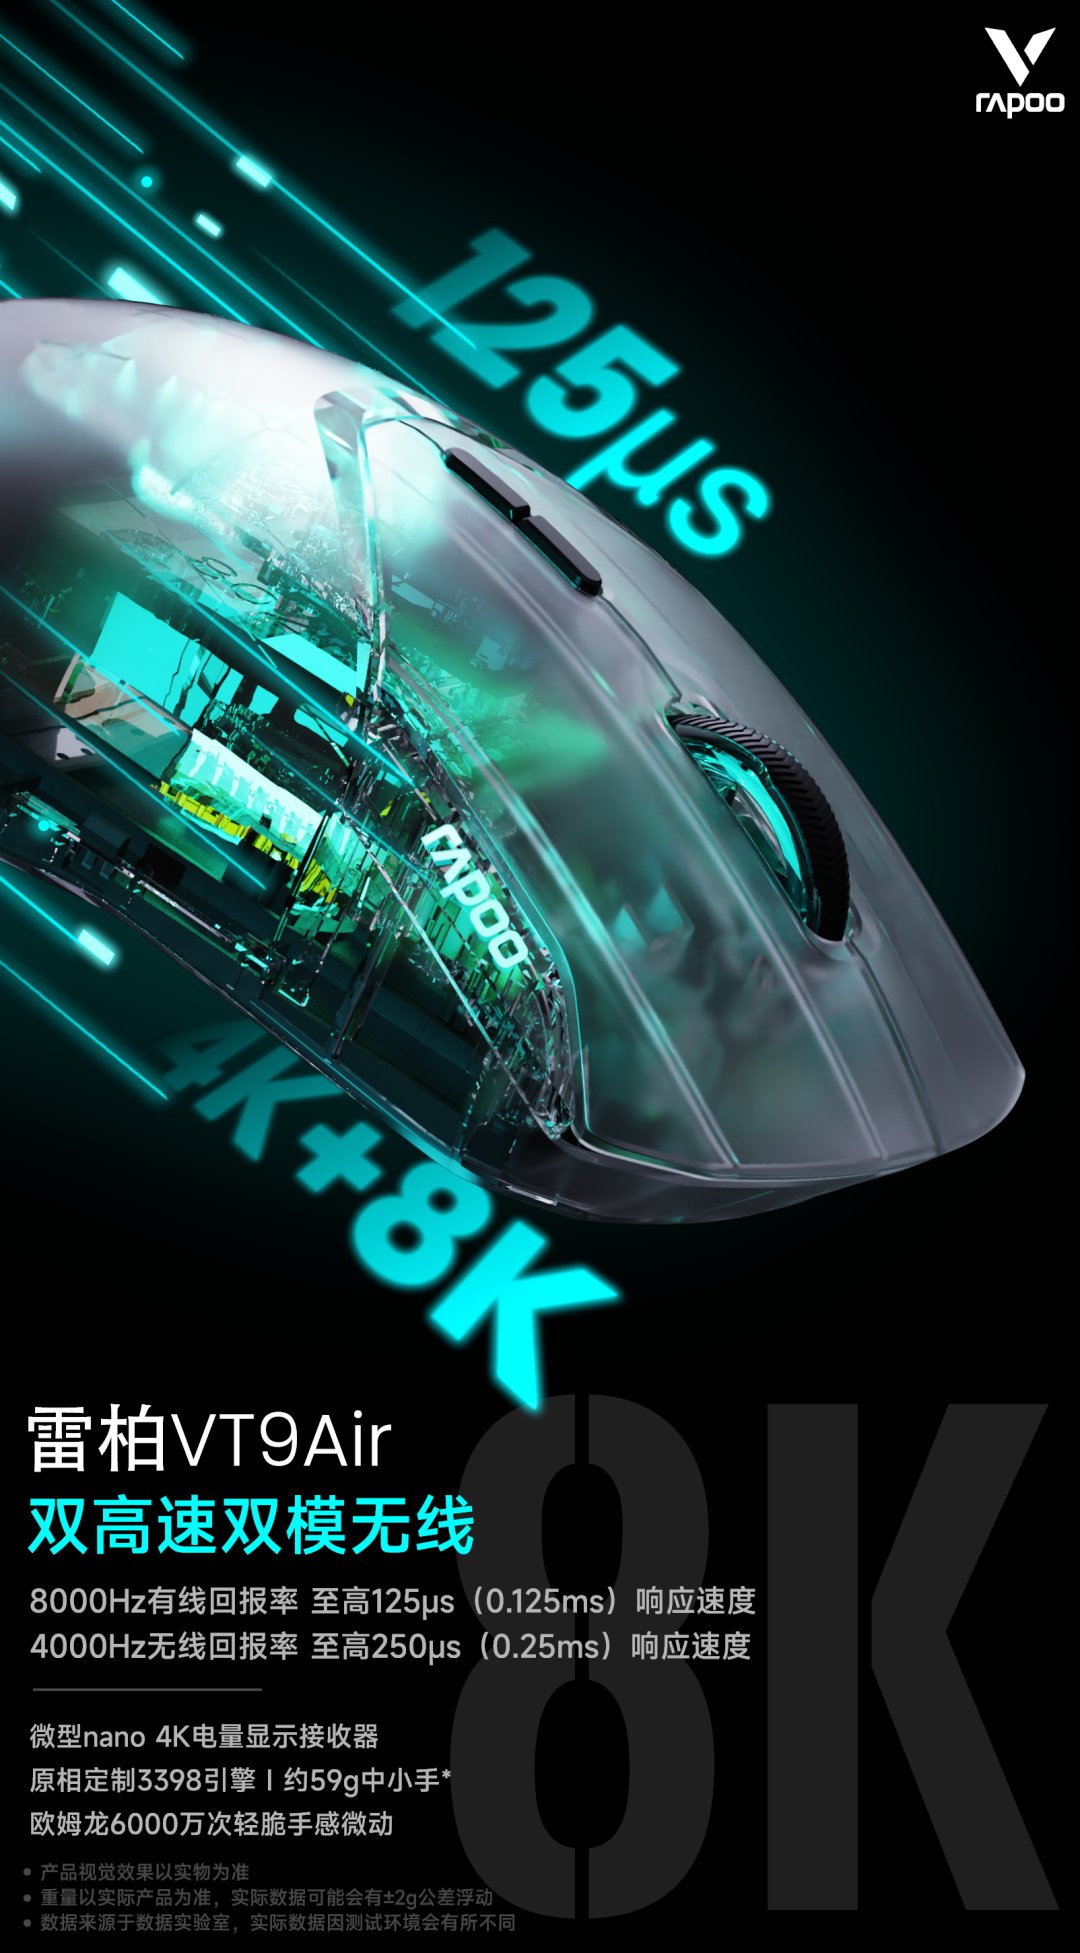 雷柏 VT9 Air 双模鼠标发布：4K 无线 8K 有线，首发价 249 元